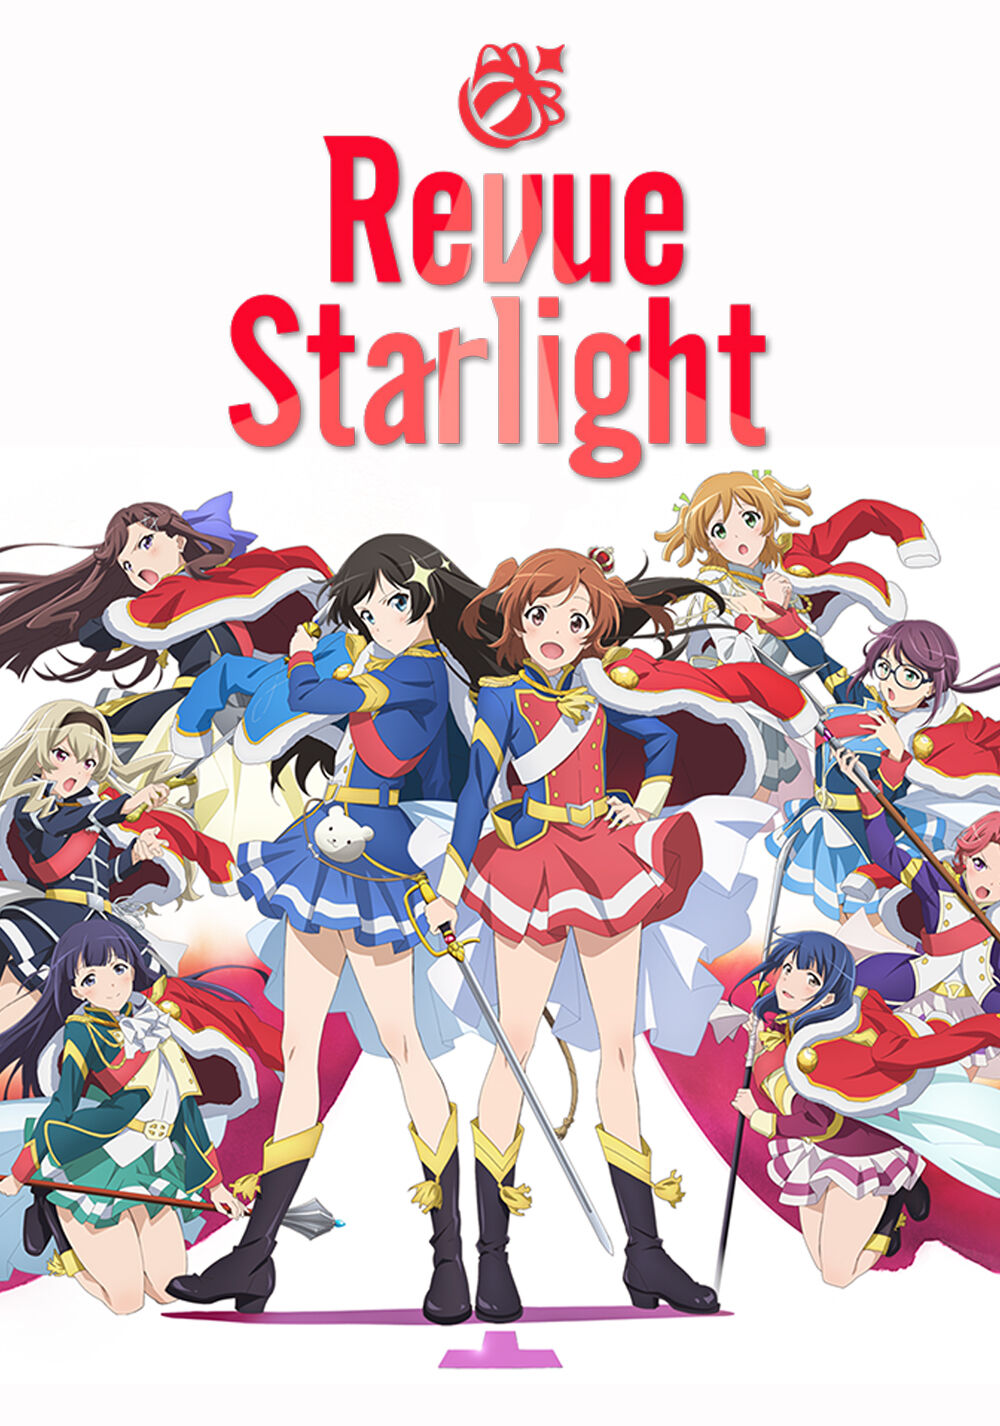 Revue Starlight - Wikipedia